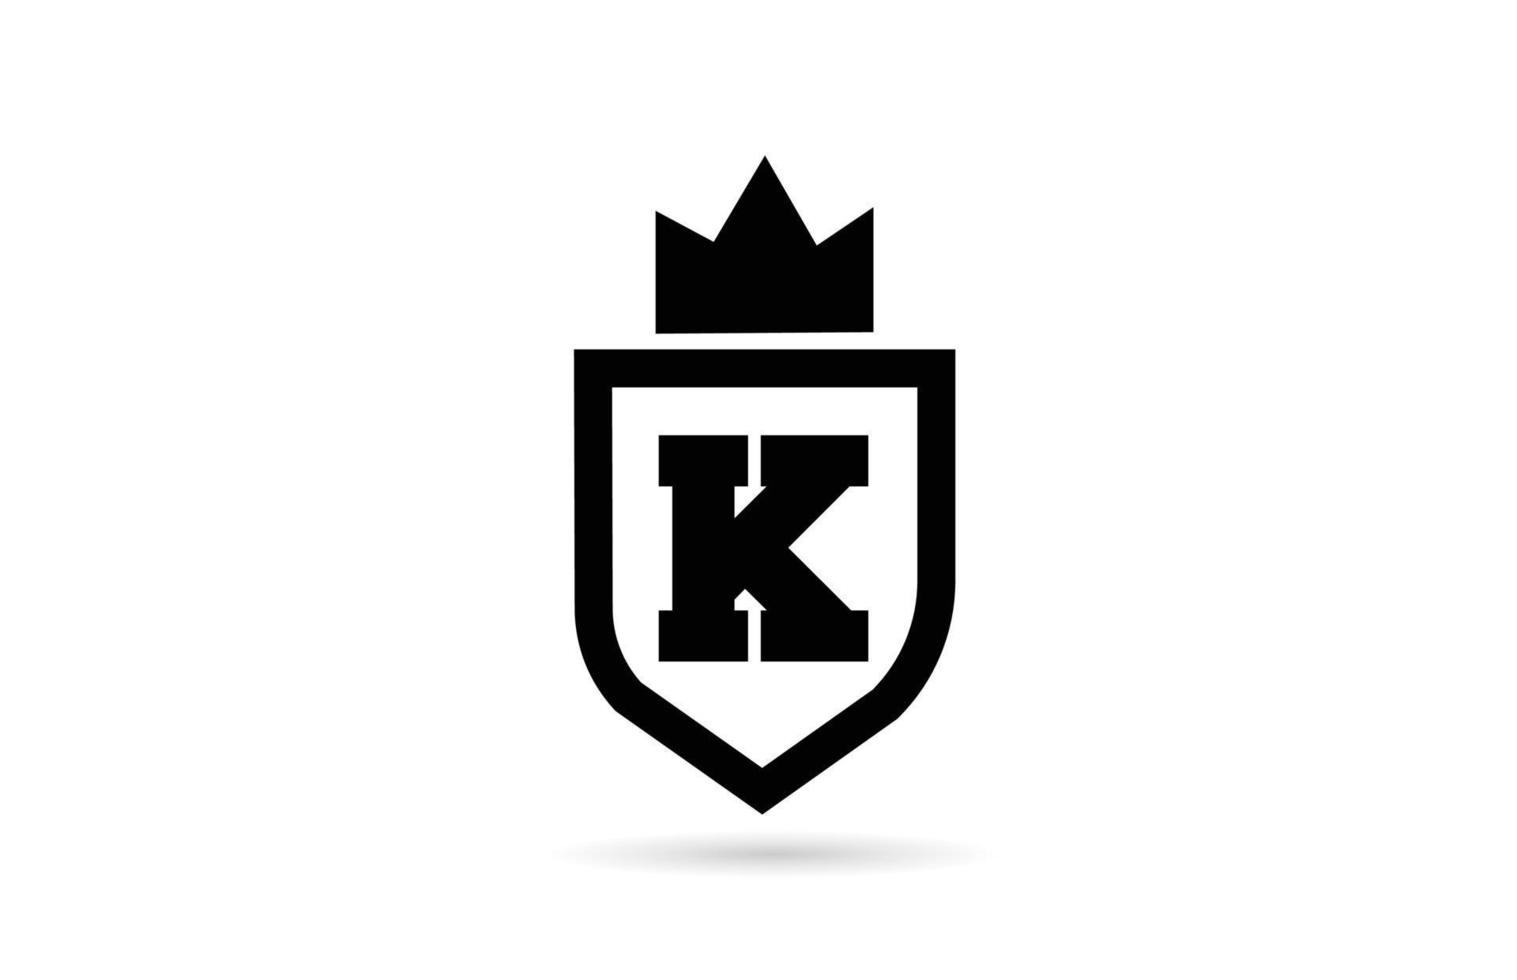 Schwarz-Weiß-k-Alphabet-Buchstaben-Symbol-Logo mit Schild- und Königskronen-Design. kreative vorlage für geschäft und unternehmen vektor